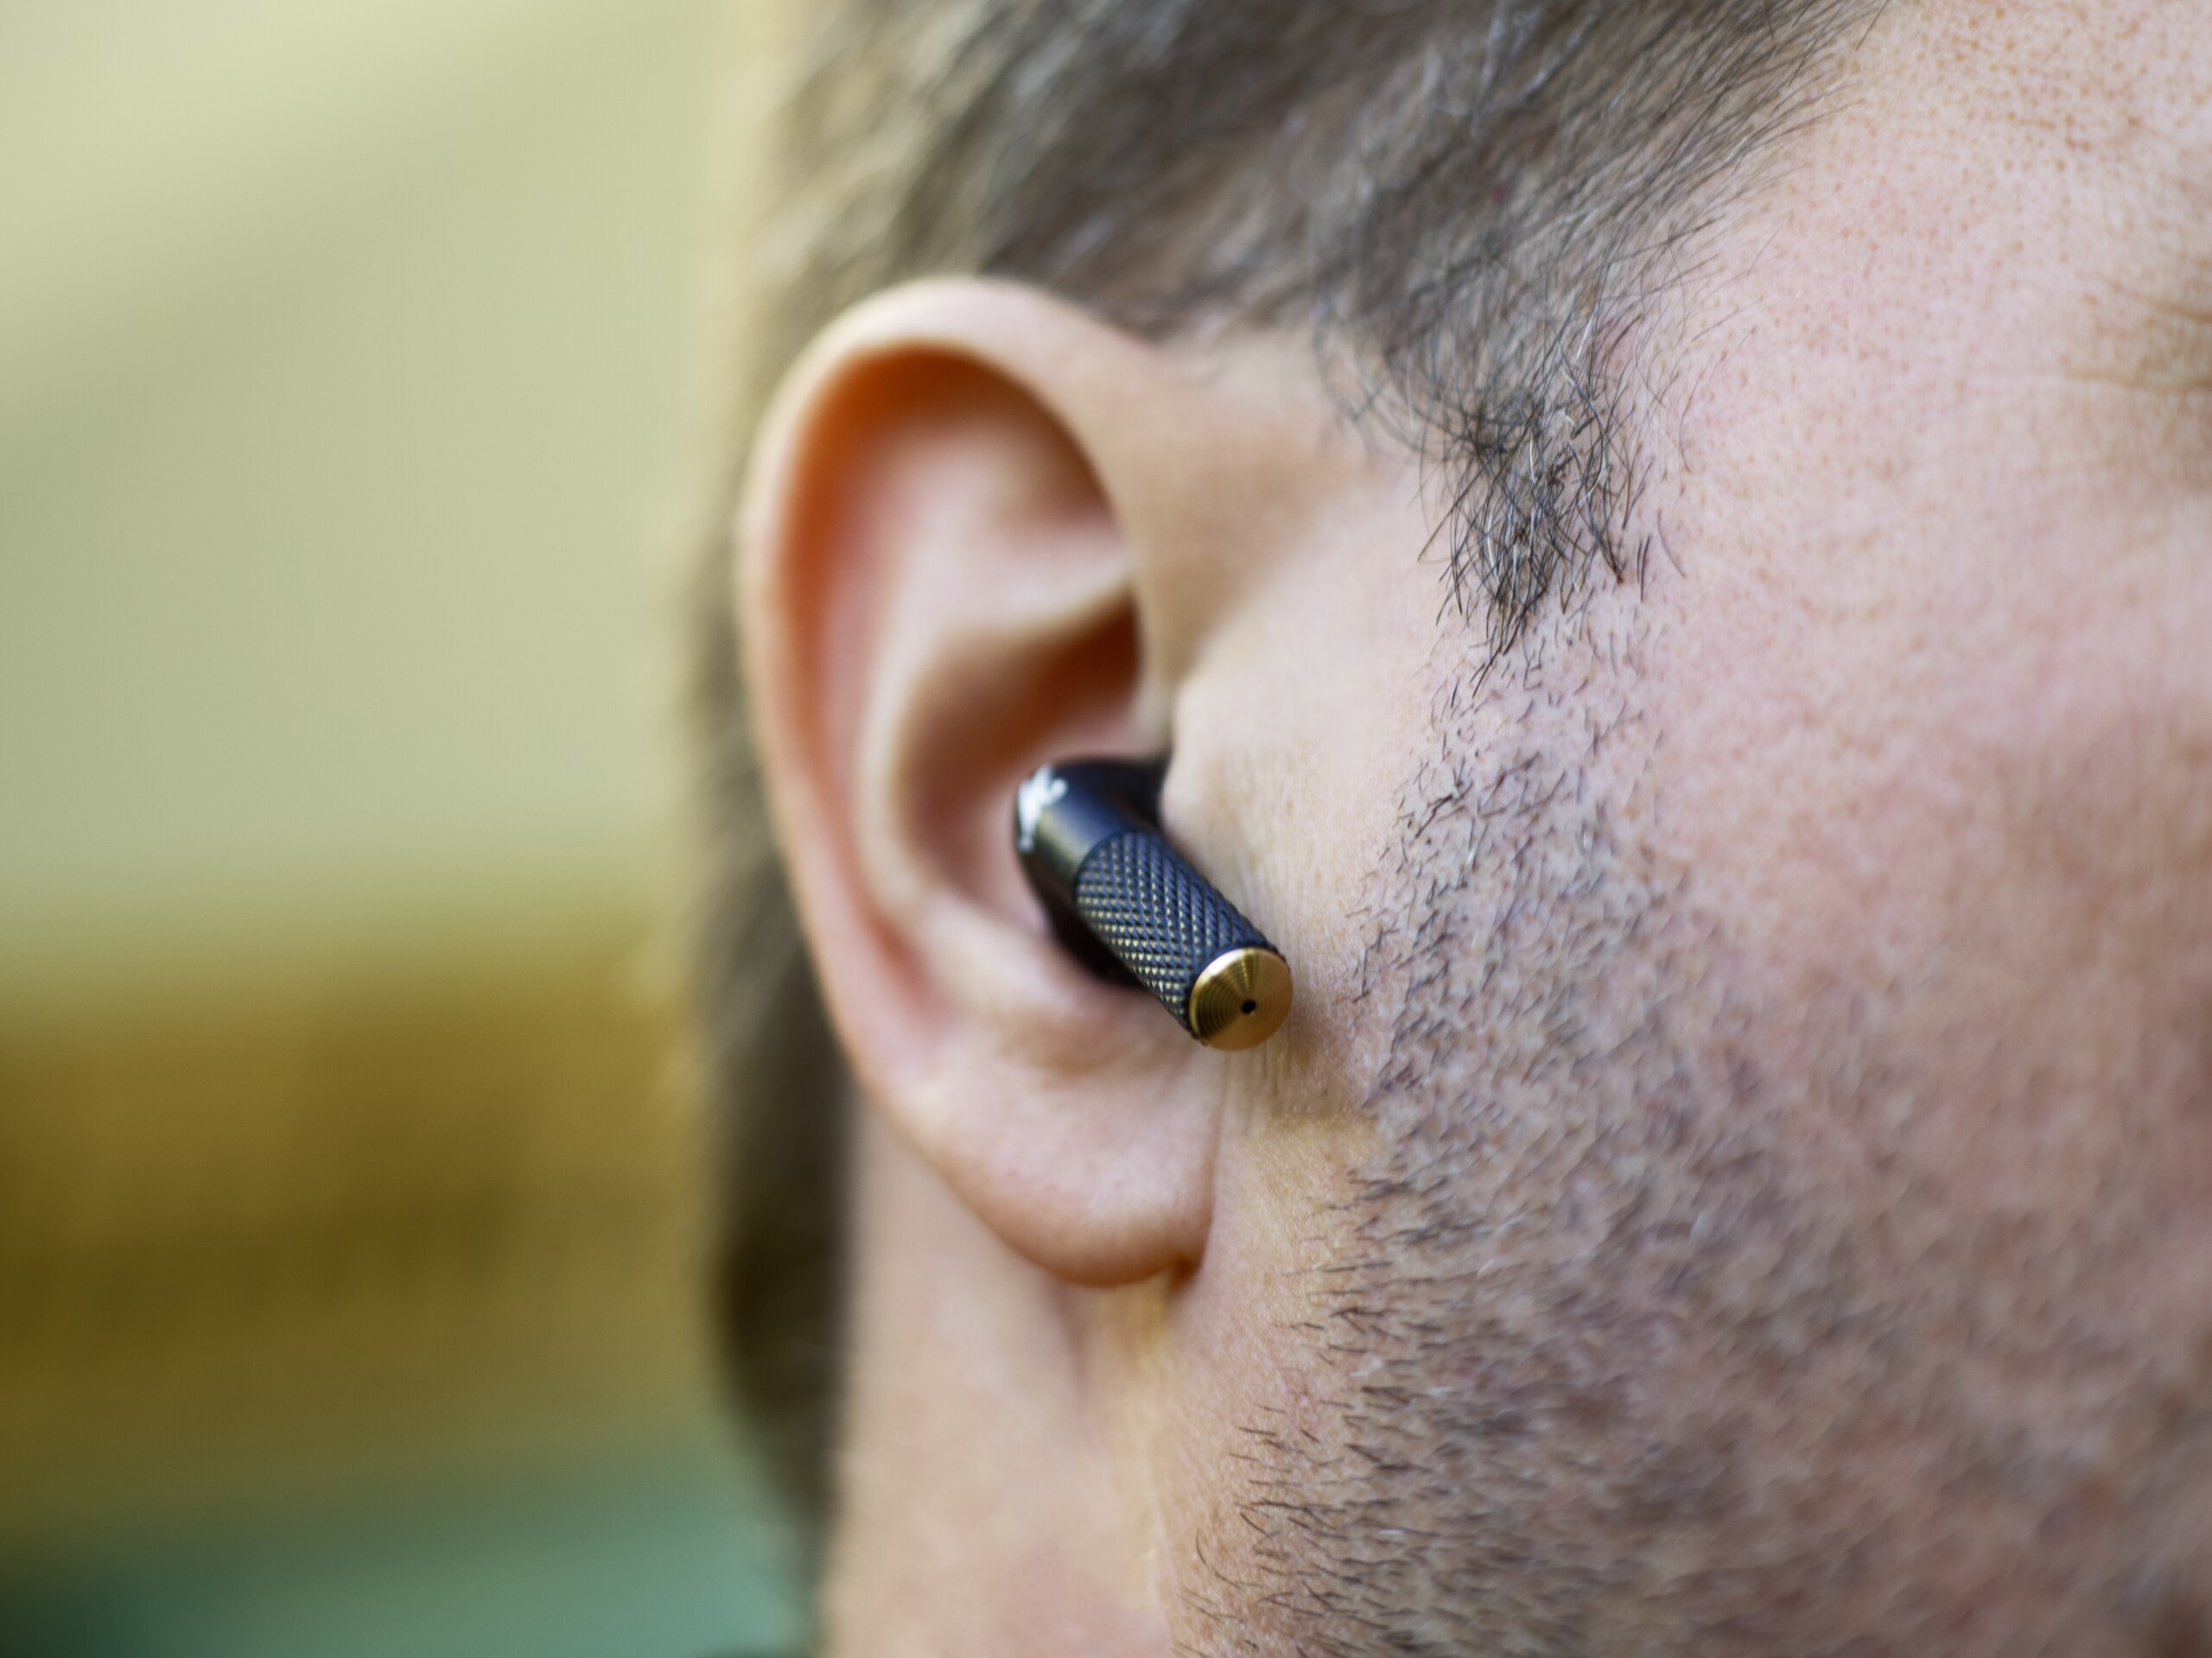 Marshall Minor III Bluetooth Ecouteurs intra-auriculaires véritablement  sans fil, Casque d'écoute - Noir